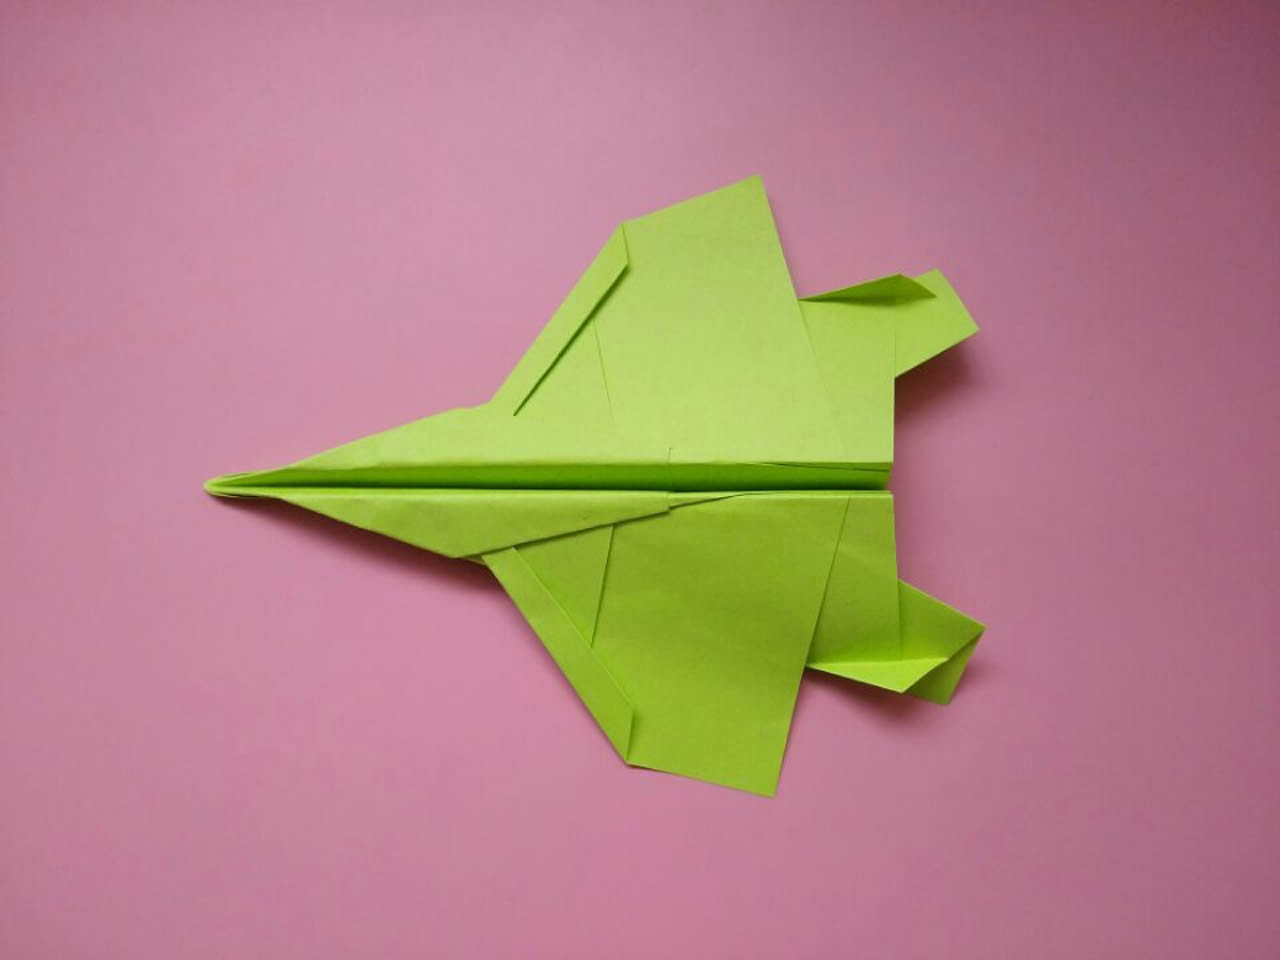 最快的纸飞机 战斗机图片